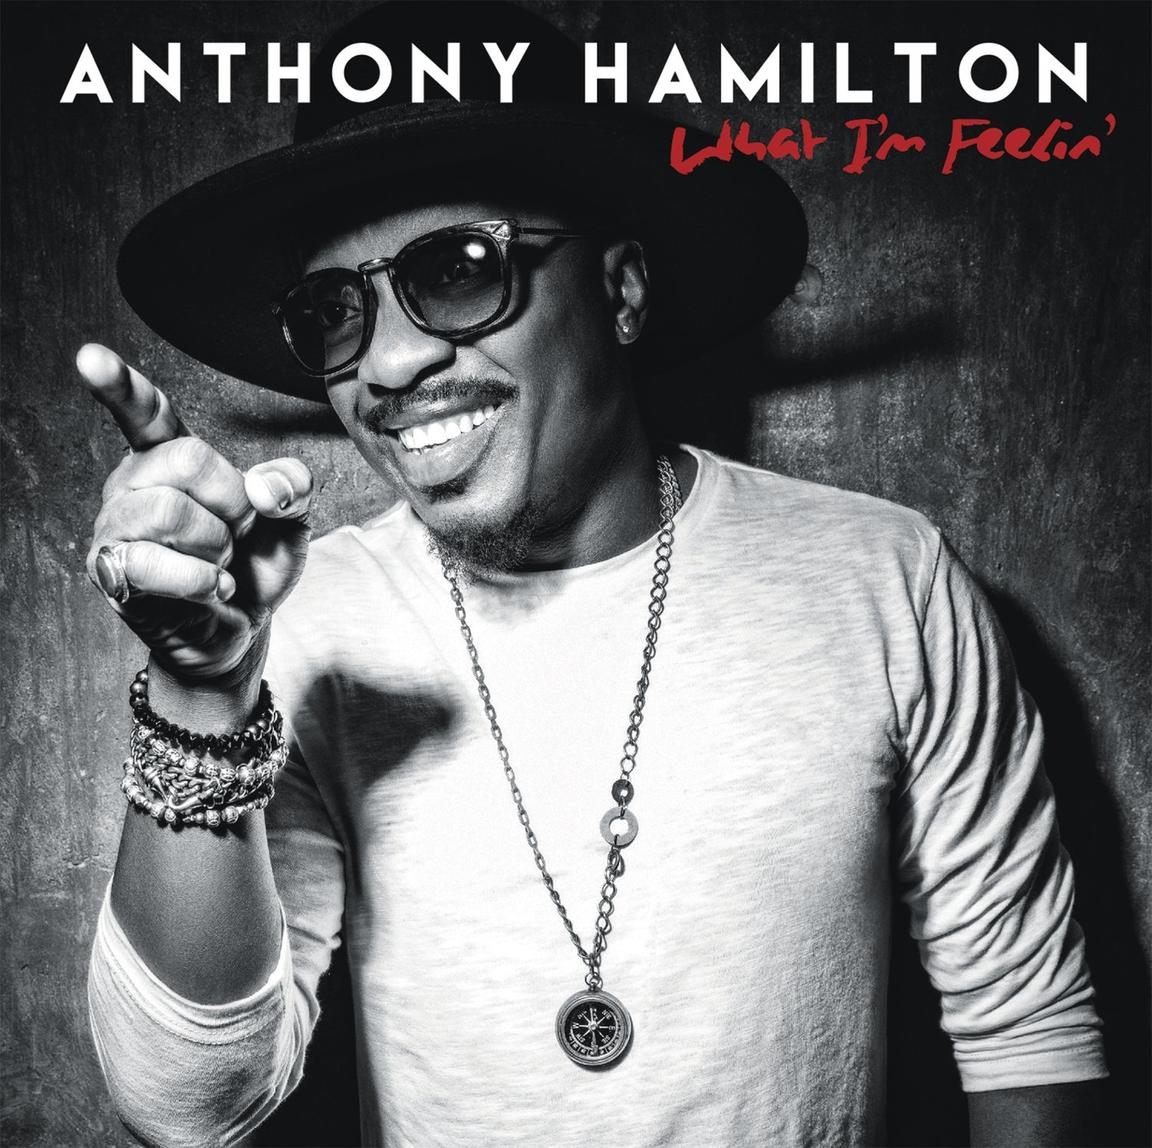 Anthony Hamilton / What I'm Feelin'